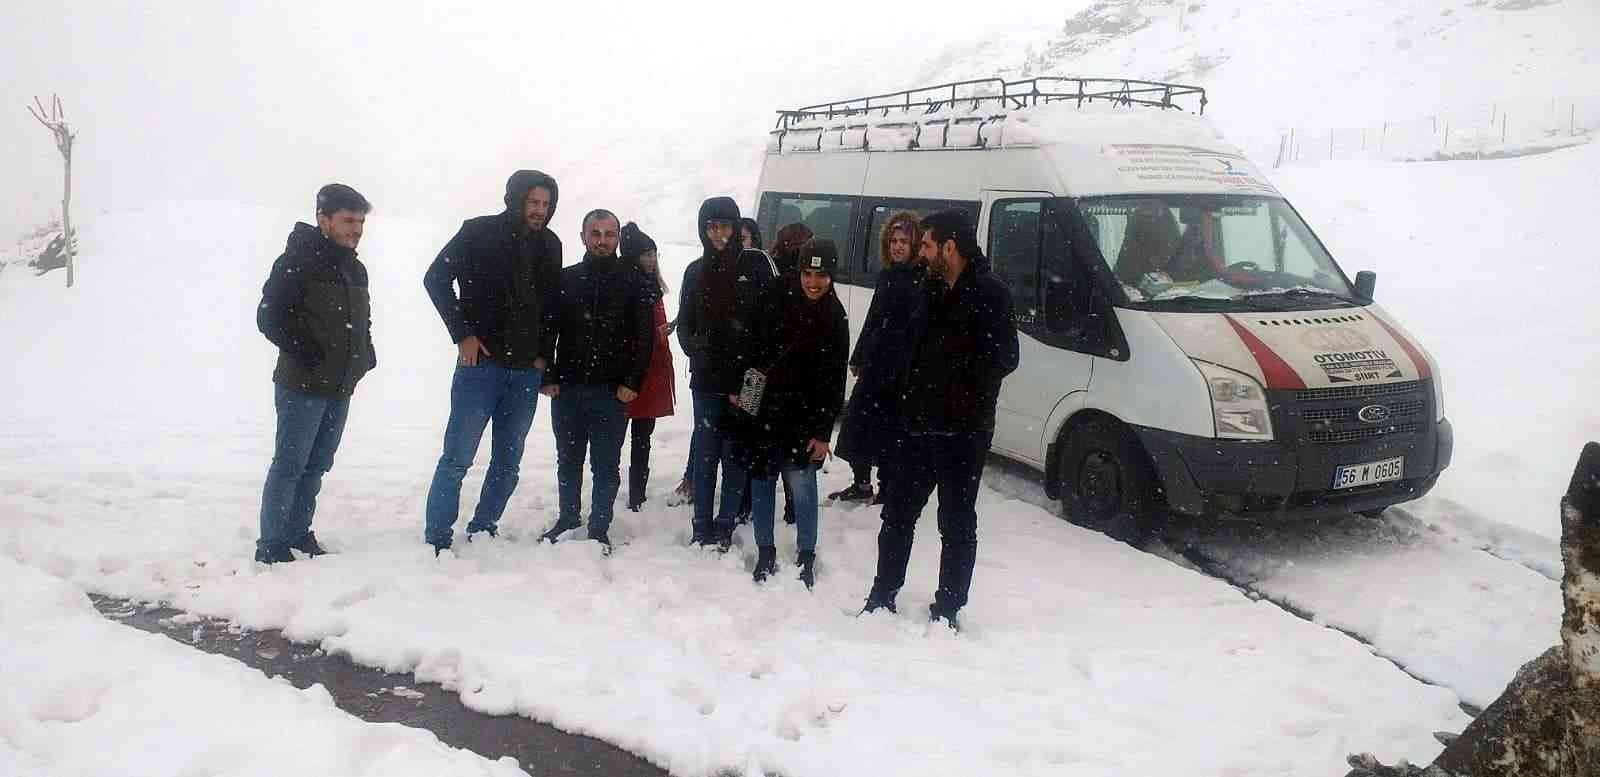 Siirt’te karda mahsur kalan 10 öğretmen kurtarıldı #siirt